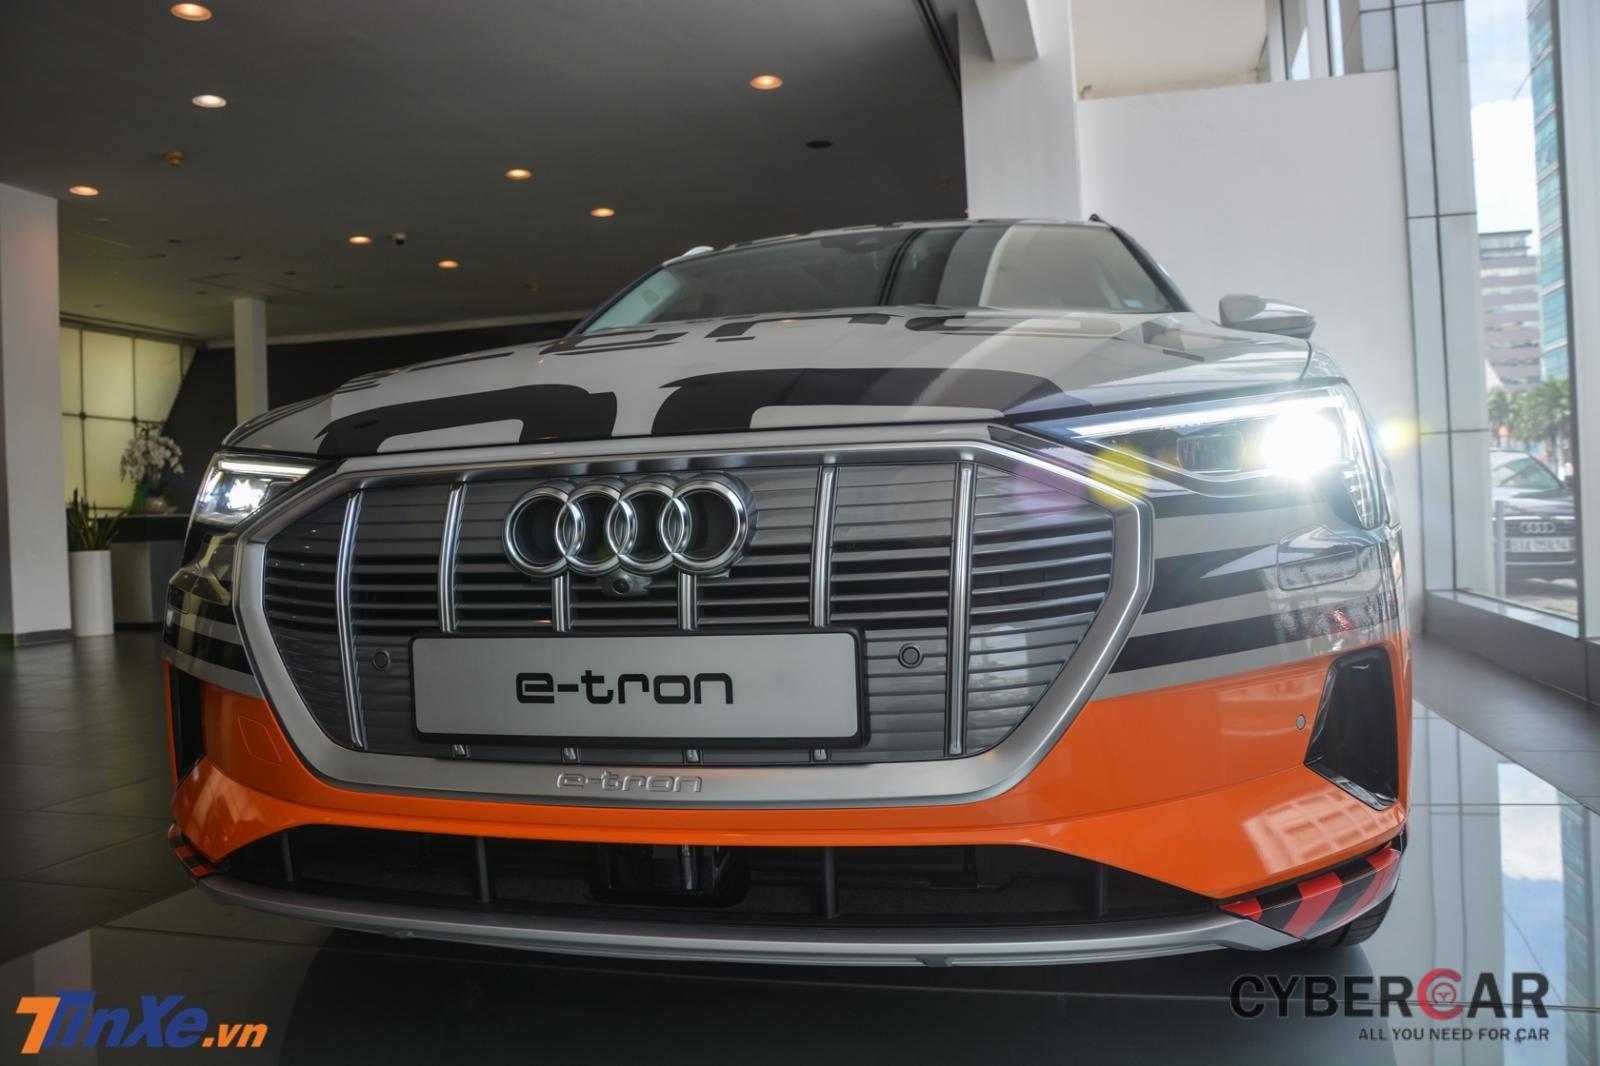 Audi e-tron đã có mặt tại Việt Nam sau hơn nửa năm ra mắt tại Singapore